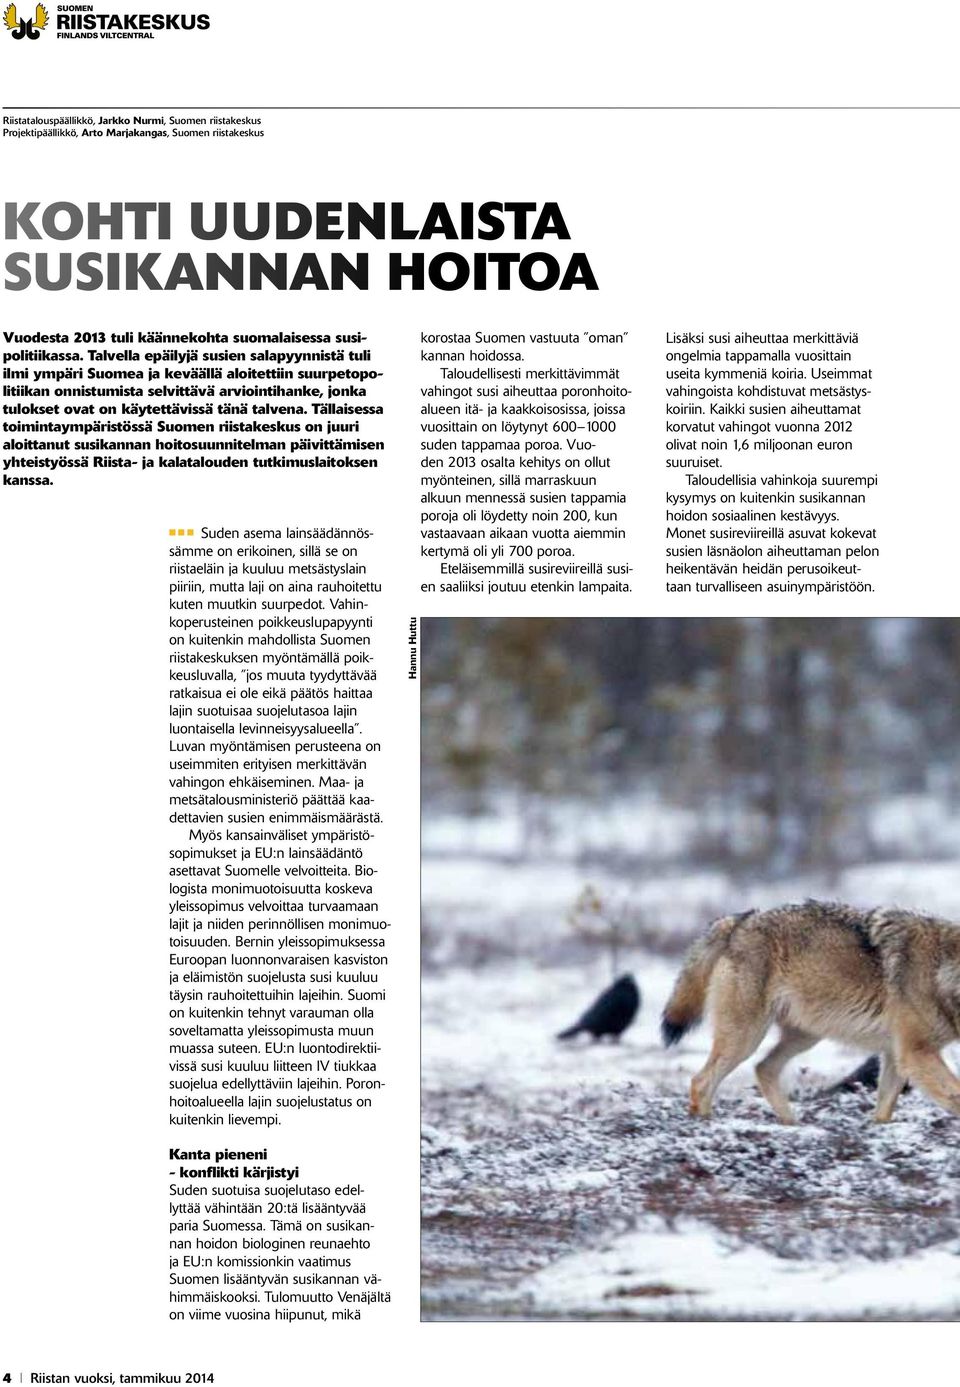 Talvella epäilyjä susien salapyynnistä tuli ilmi ympäri Suomea ja keväällä aloitettiin suurpetopolitiikan onnistumista selvittävä arviointihanke, jonka tulokset ovat on käytettävissä tänä talvena.